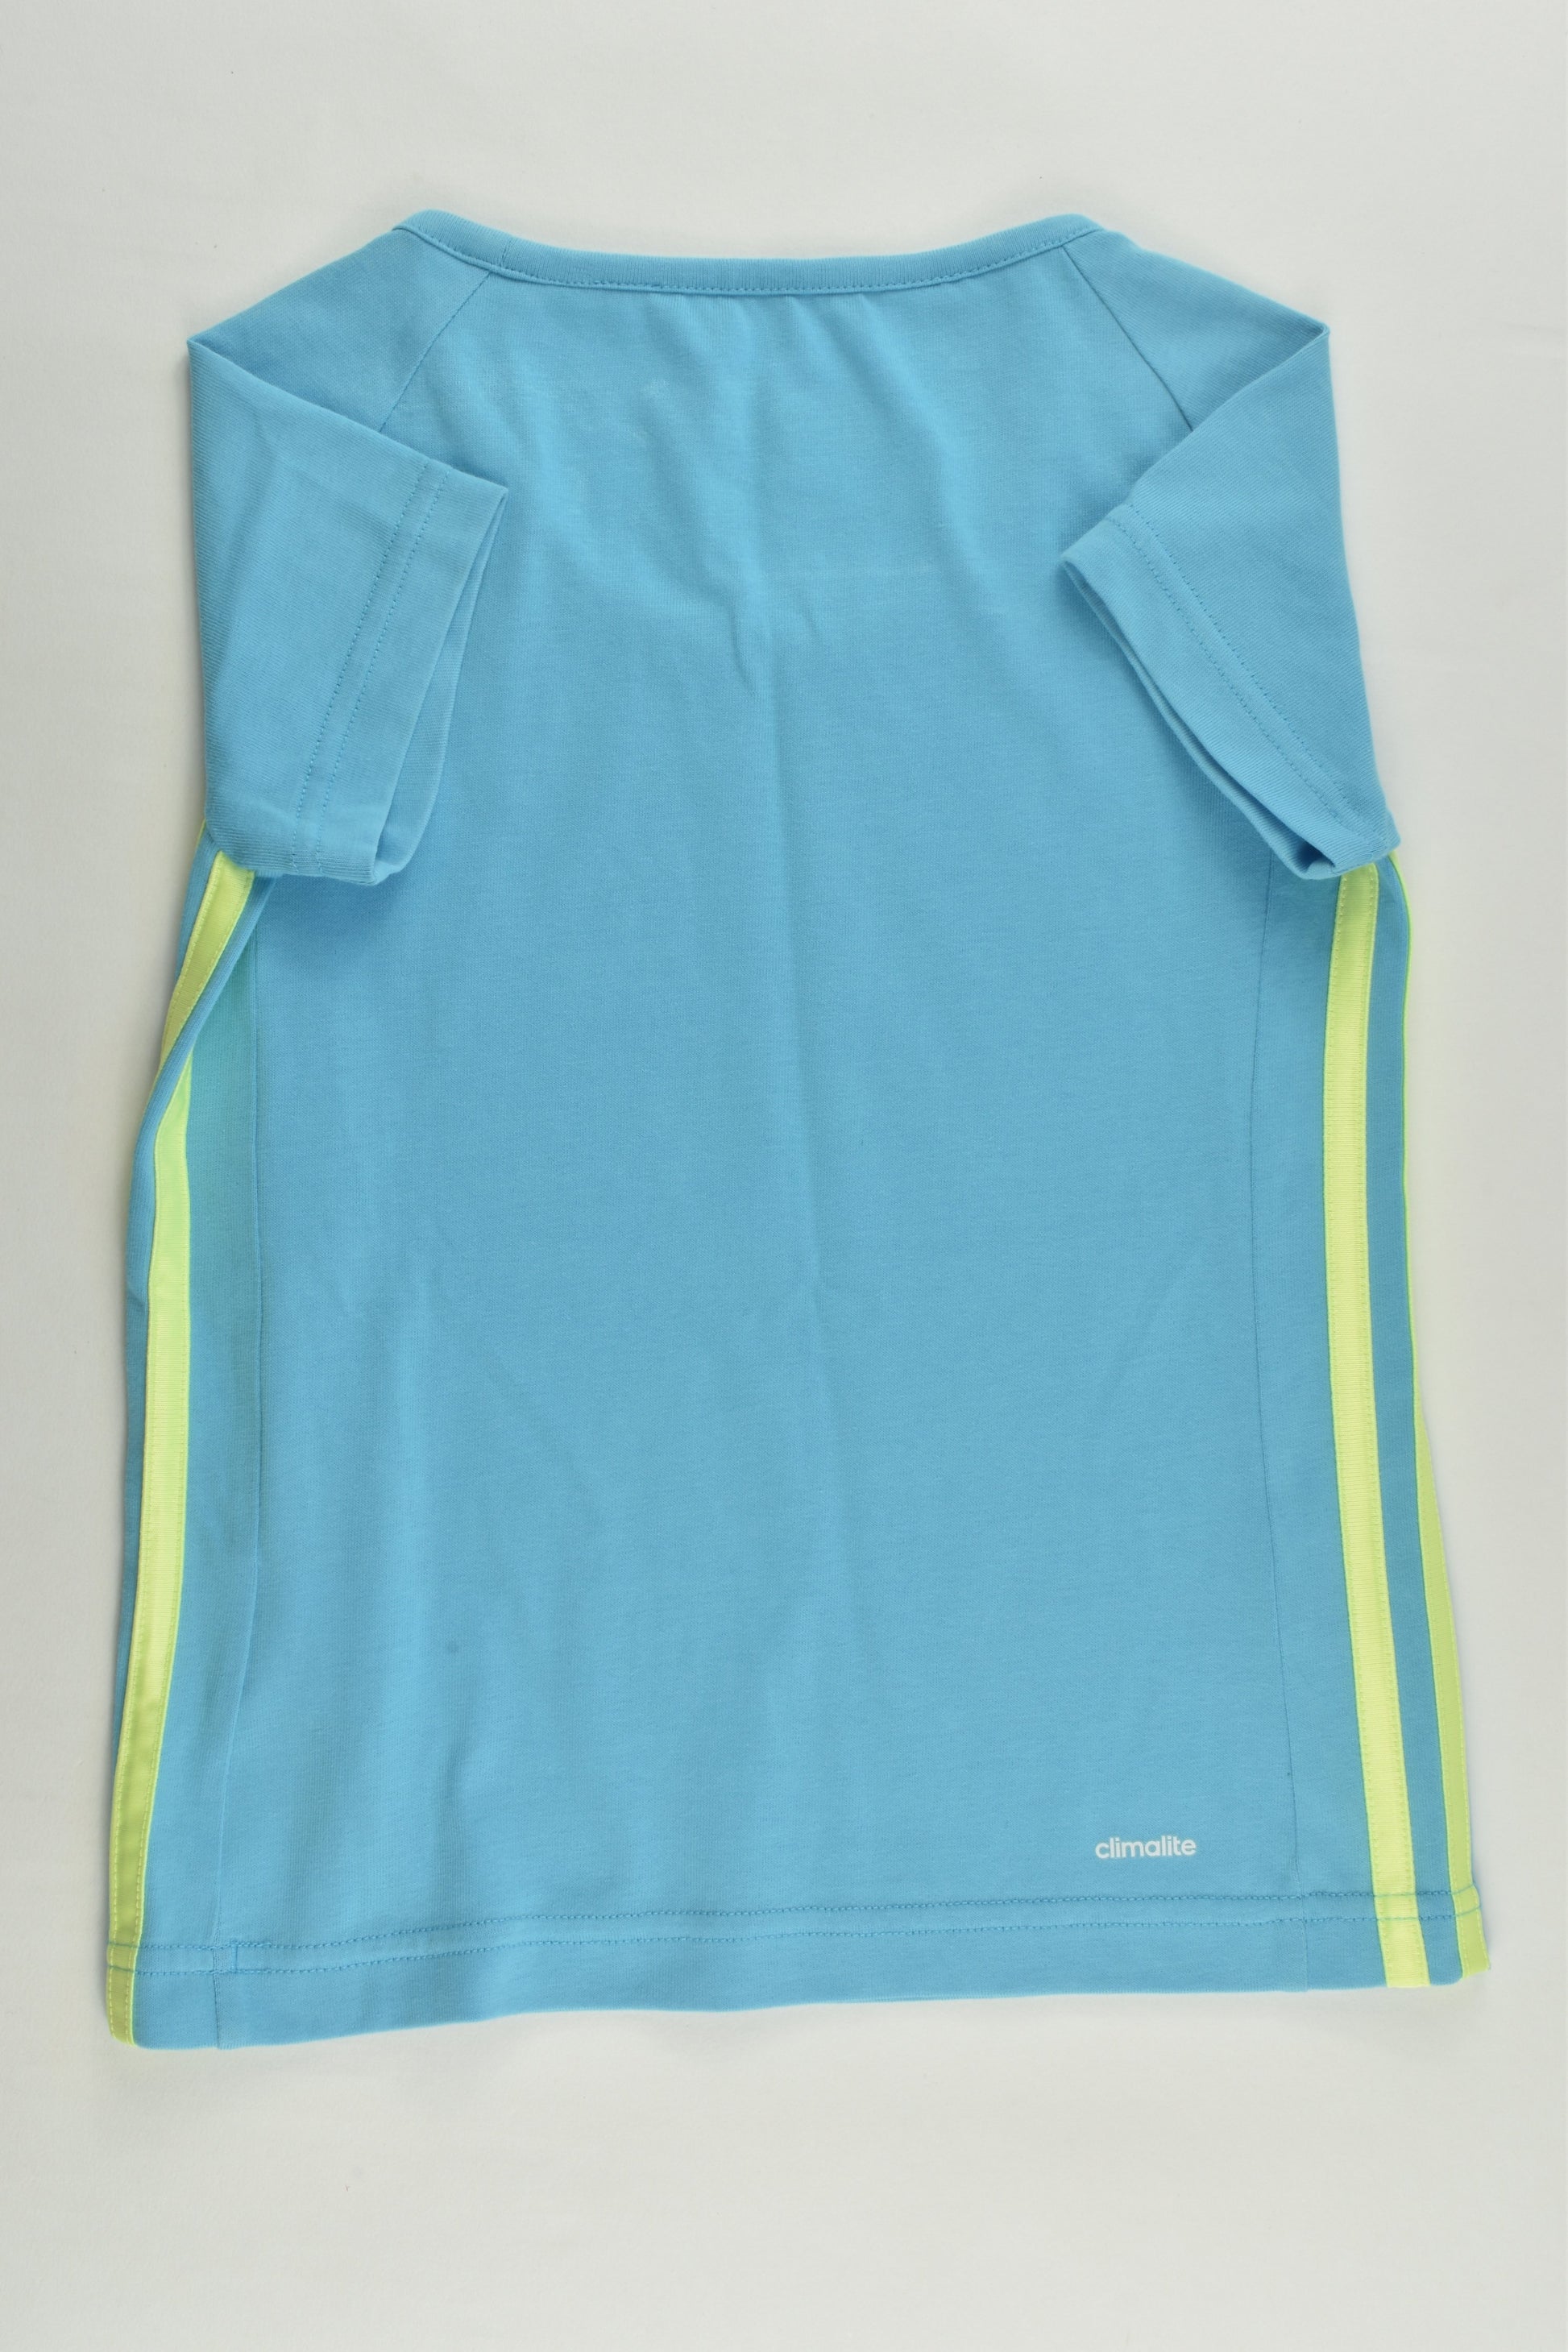 Adidas Size 7-8 Climalite T-shirt